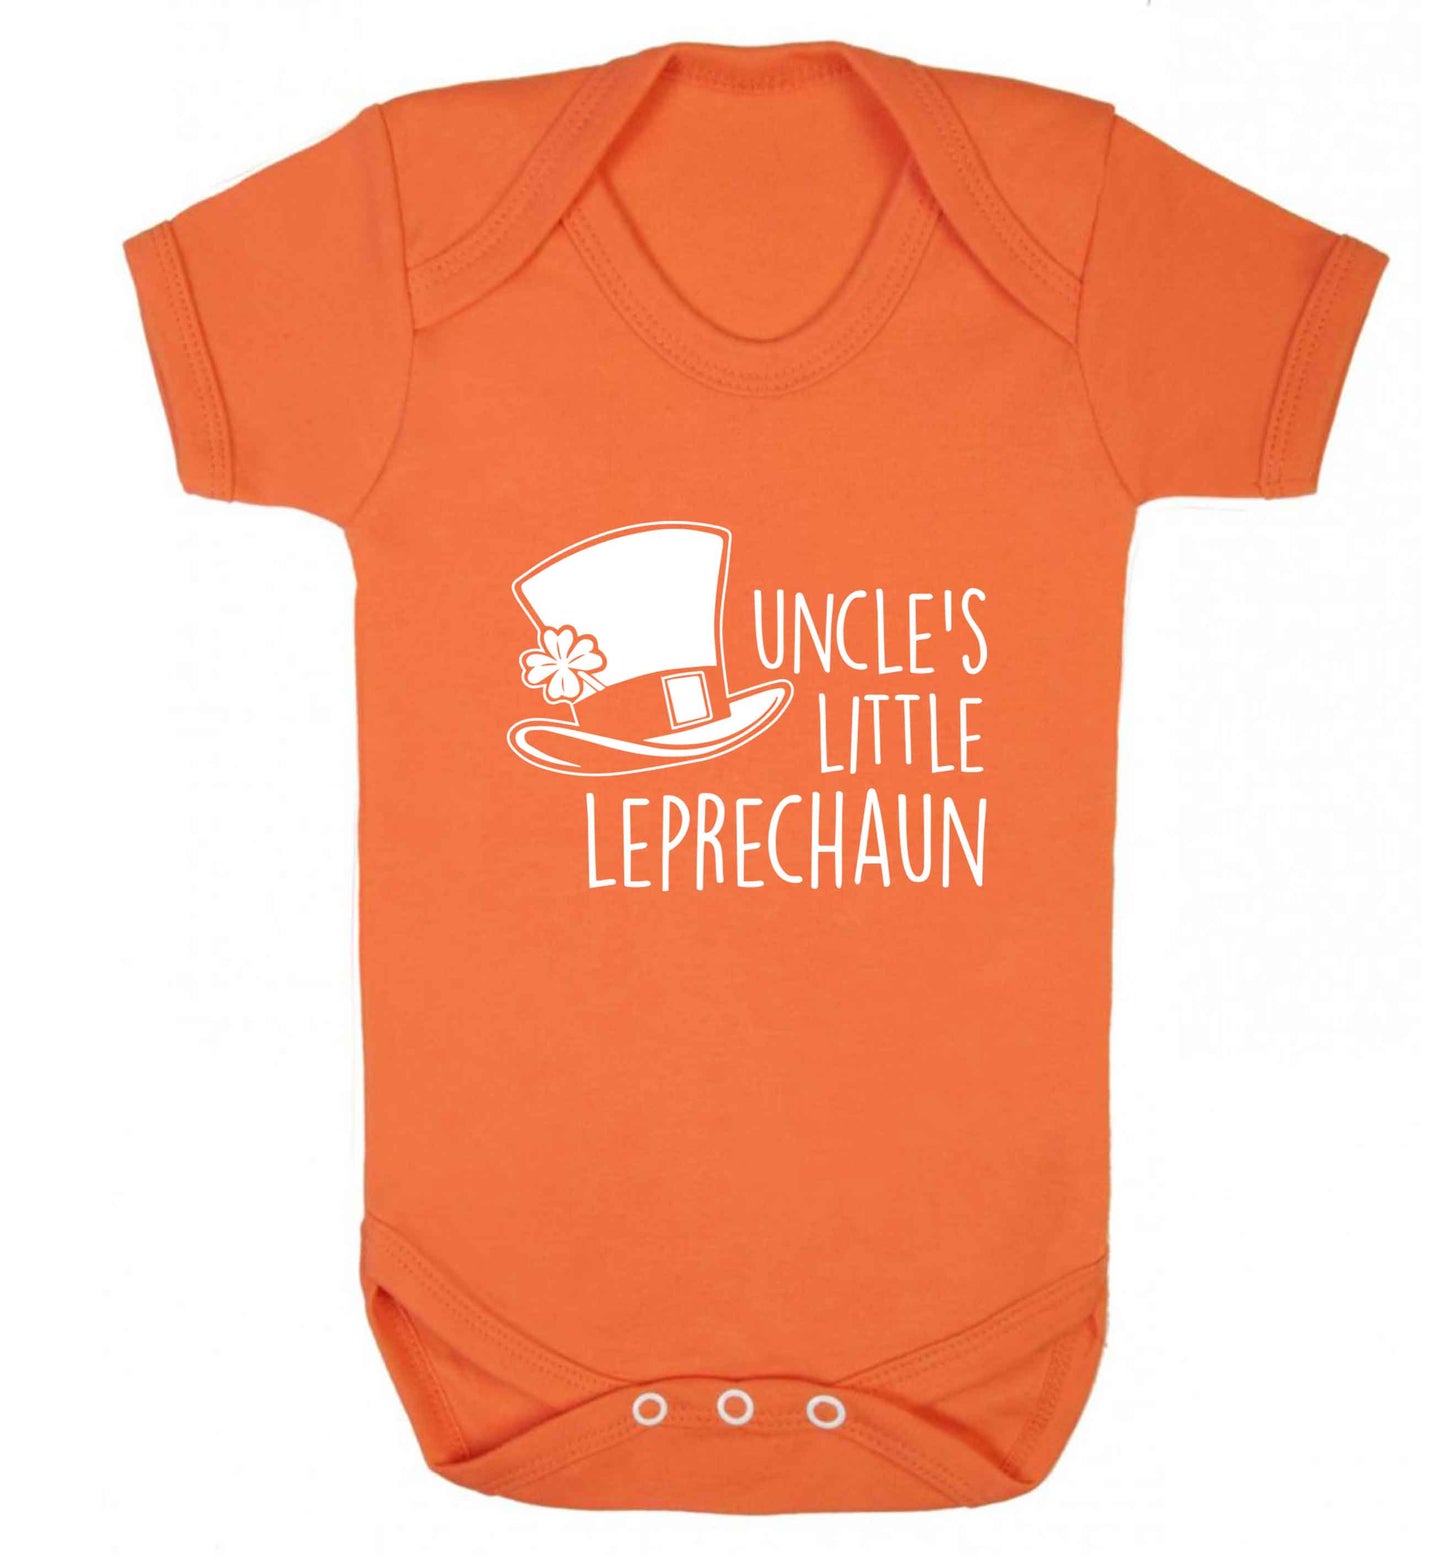 Uncles little leprechaun baby vest orange 18-24 months